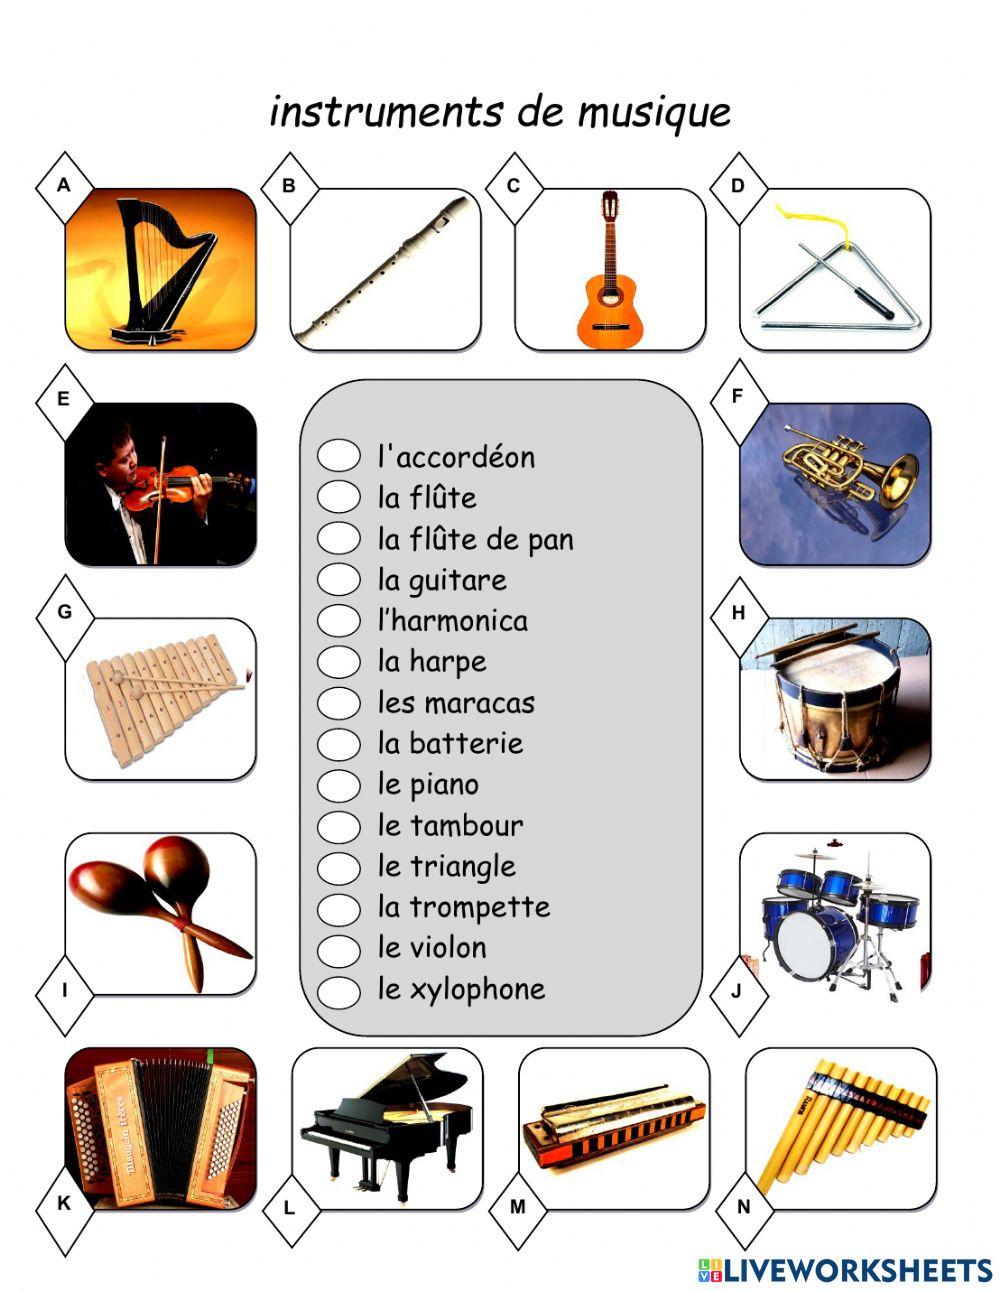 Les instruments de musique online exercise for